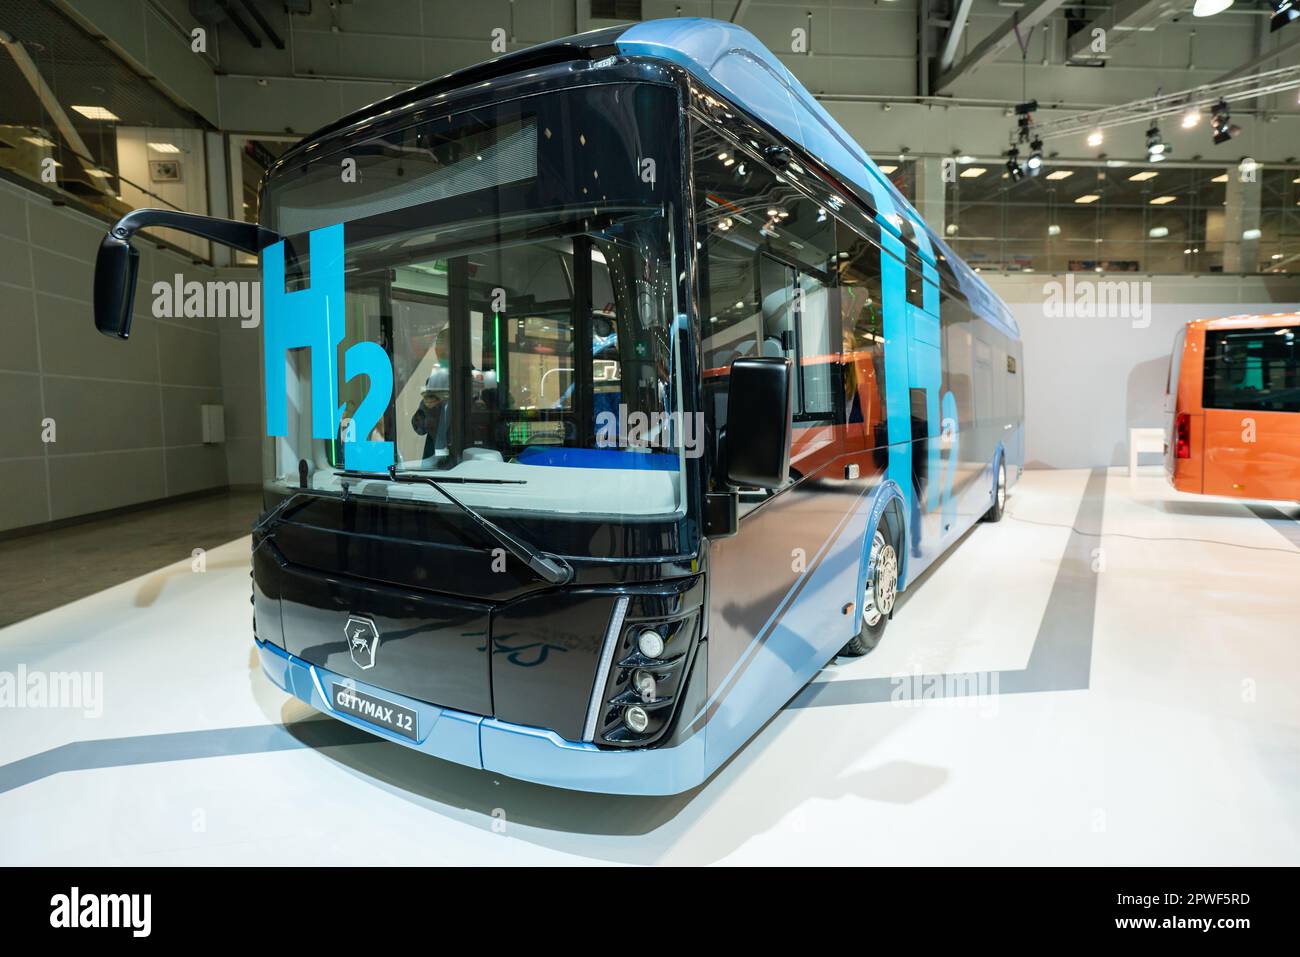 Mosca, Russia - Settembre, 2021: Autobus a celle a combustibile a idrogeno GAZ Citymax 12 in mostra Comtrans 2021 Foto Stock